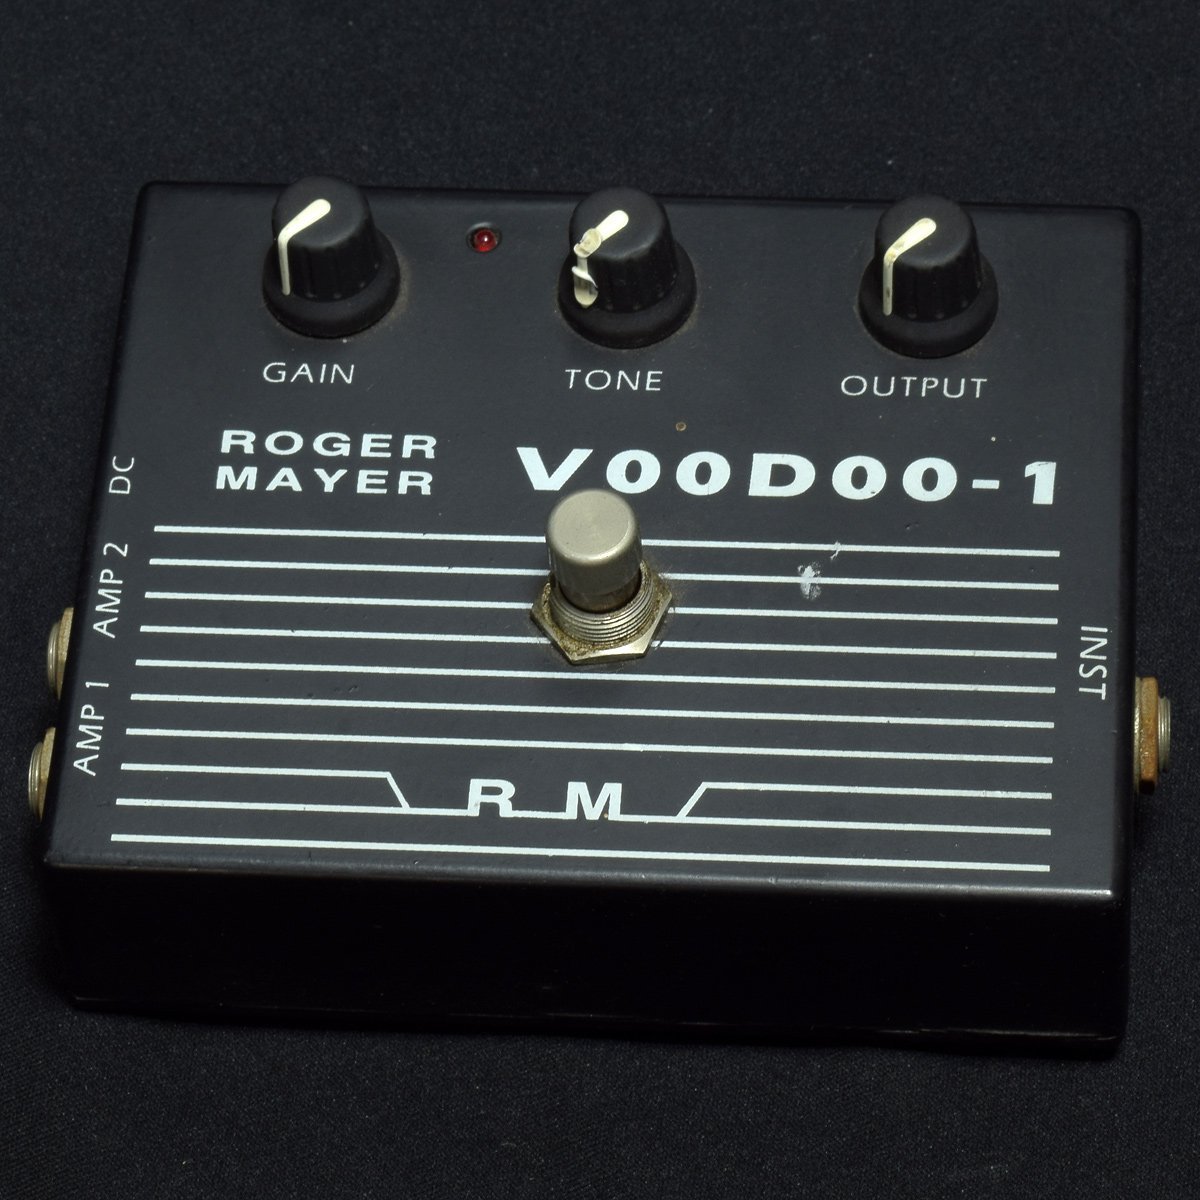 Roger Mayer Voodoo-1 Classic